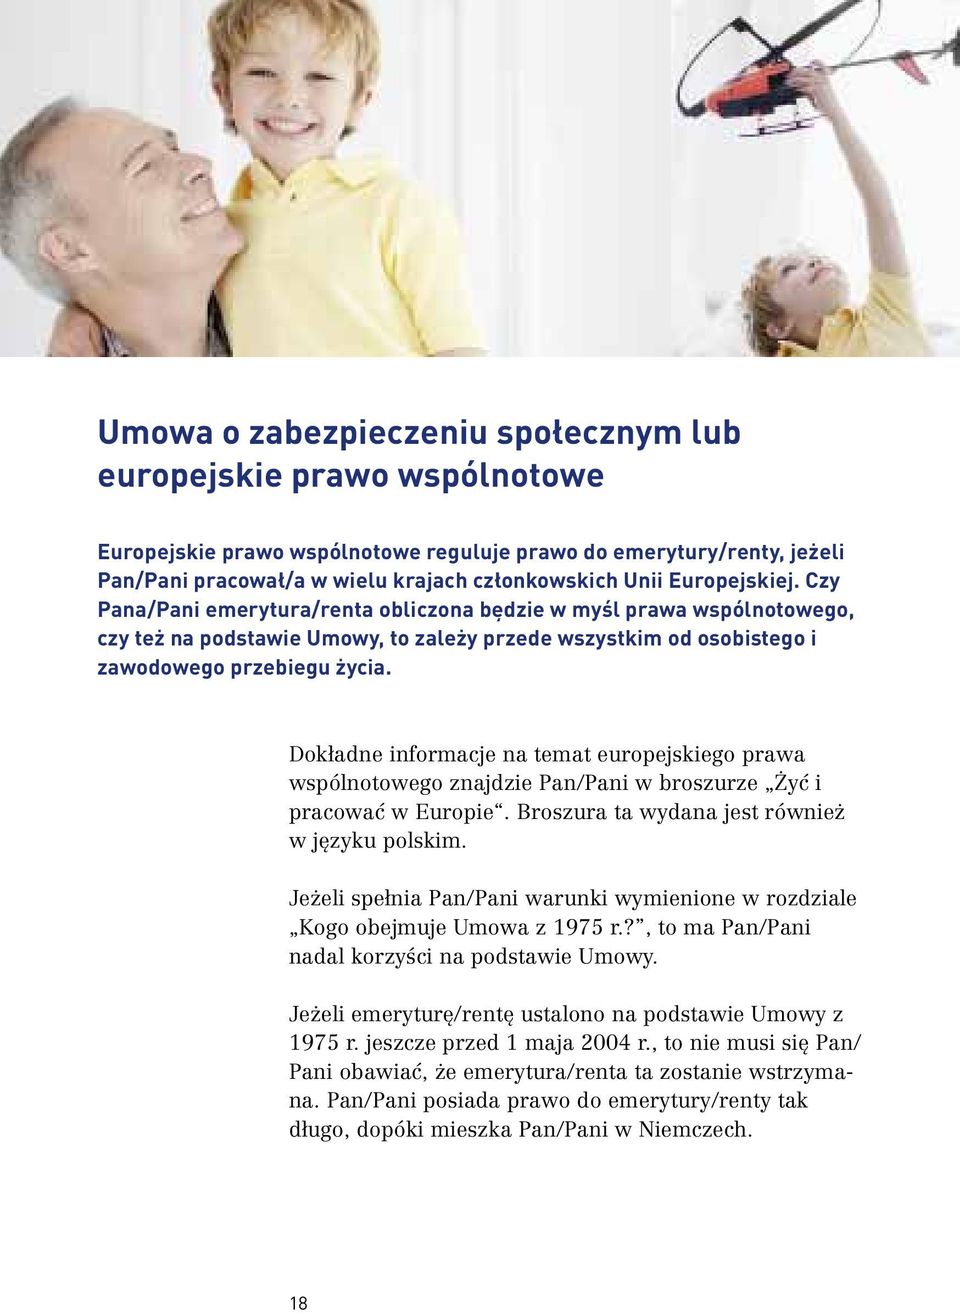 Dokładne informacje na temat europejskiego prawa wspólnotowego znajdzie Pan/Pani w broszurze Żyć i pracować w Europie. Broszura ta wydana jest również w języku polskim.